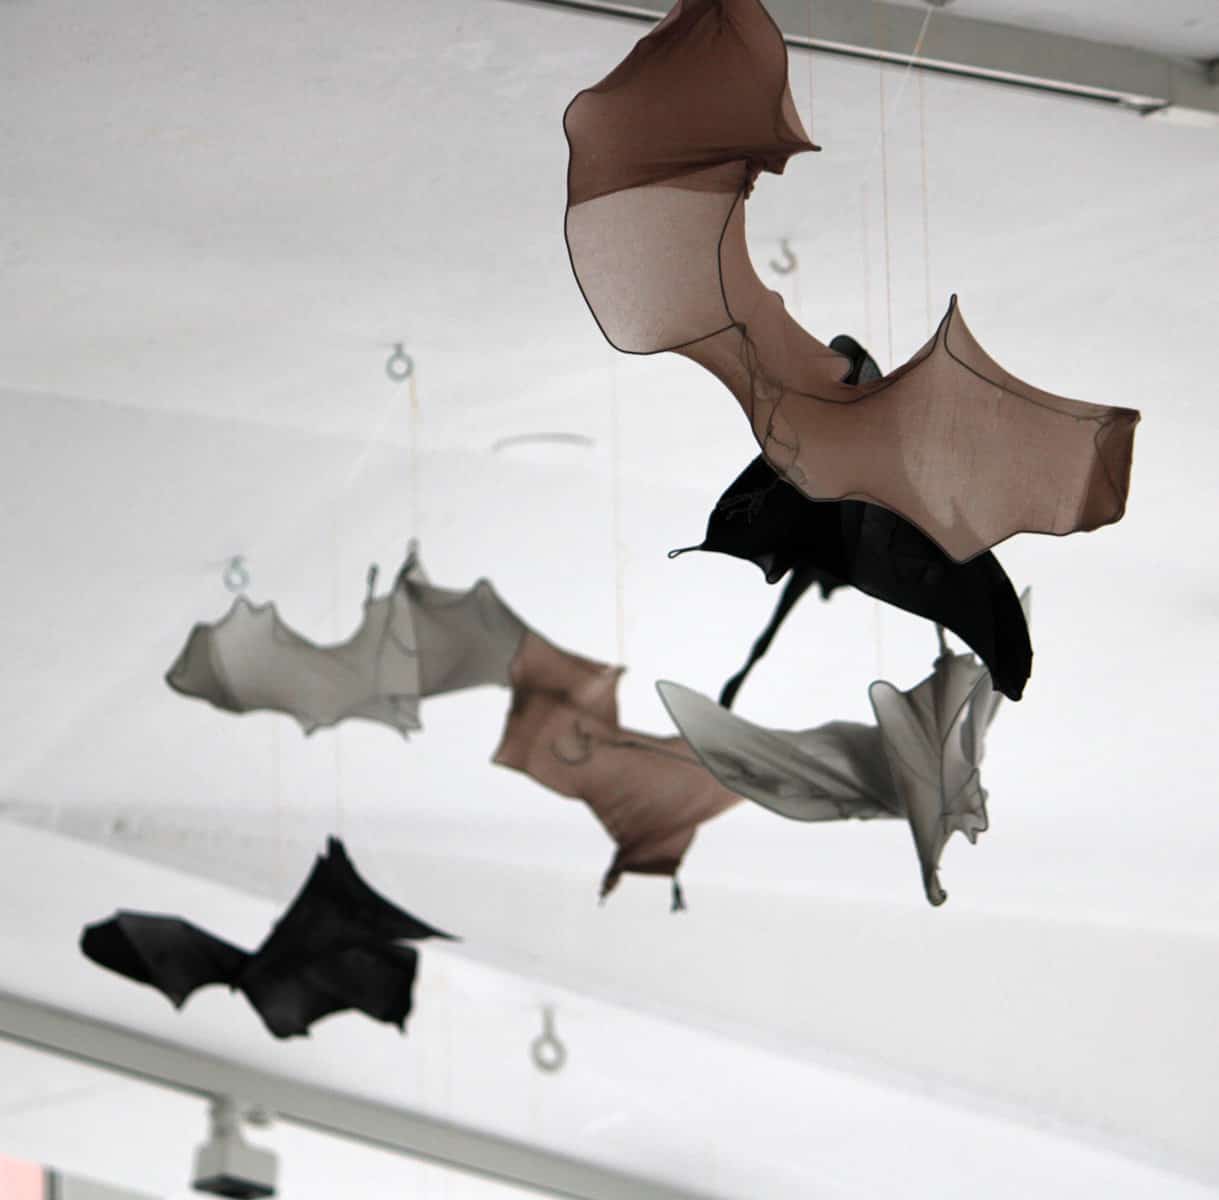 Sabine Schäfer/Rosemarie Vollmer, Bats ´n´ Insects, audiovisuelle Installation, Galerie GEDOK Karlsruhe, 11.09.-10.10.2021, Foto: Anne Kup